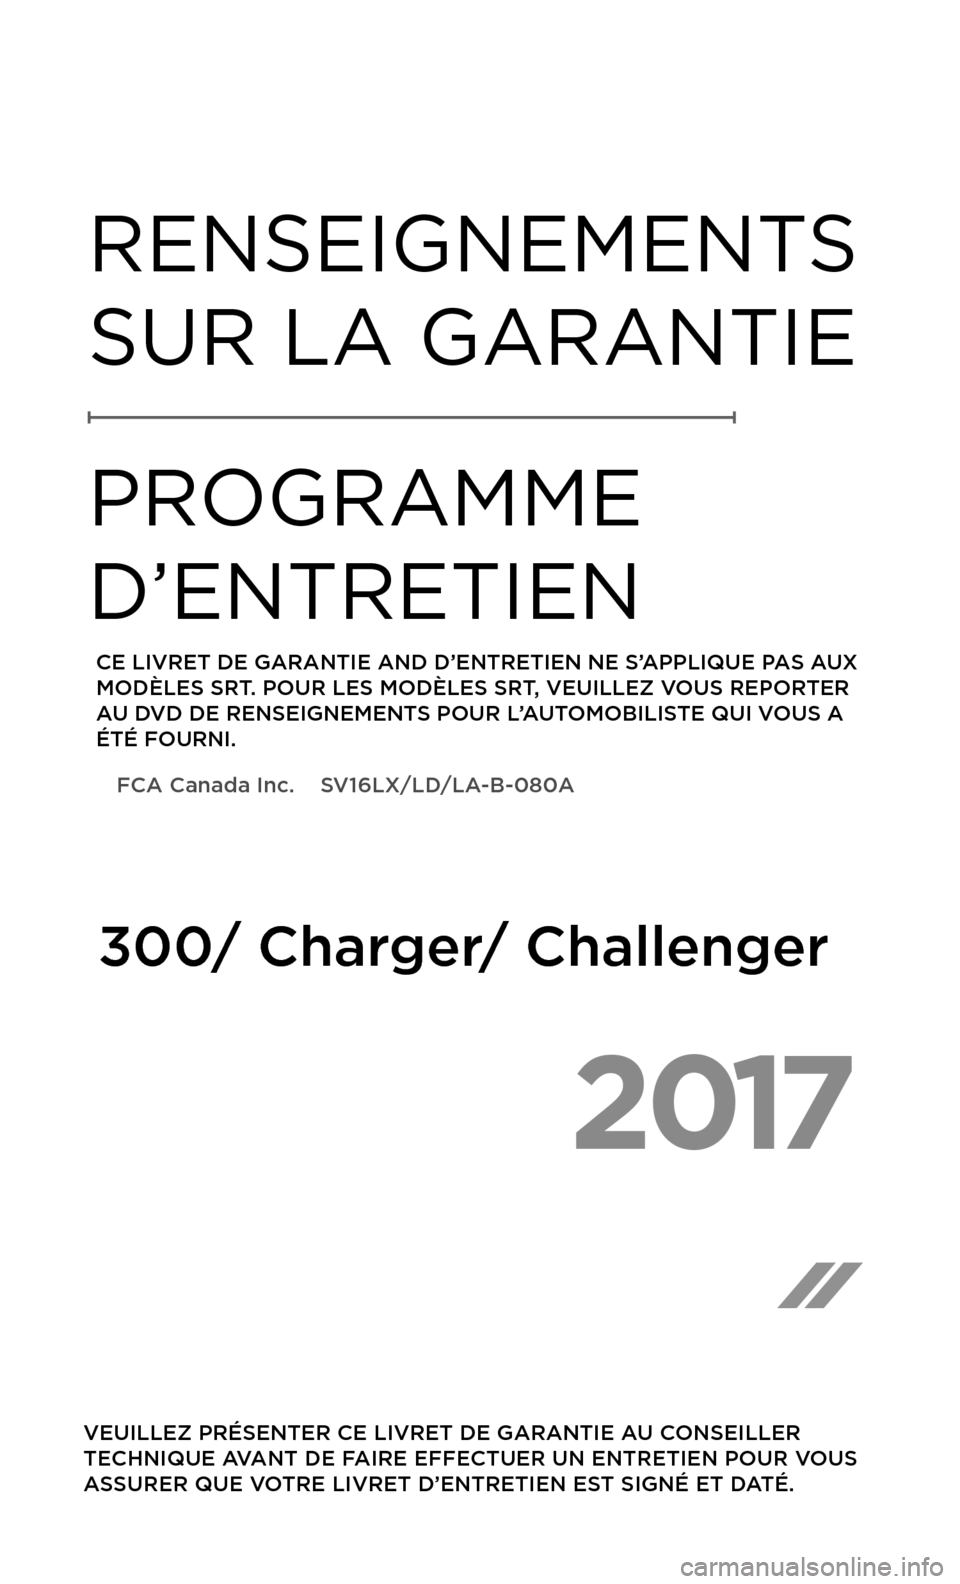 CHRYSLER 300 2017 2.G Warranty Booklet 2017 
 VEUILLEZ PRÉSENTER CE LIVRET DE GARANTIE AU CONSEILLER 
TECHNIQUE AVANT DE FAIRE EFFECTUER UN ENTRETIEN POUR VOUS 
ASSURER QUE VOTRE LIVRET D’ENTRETIEN EST SIGNÉ ET DATÉ.
RENSEIGNEMENTS 
S